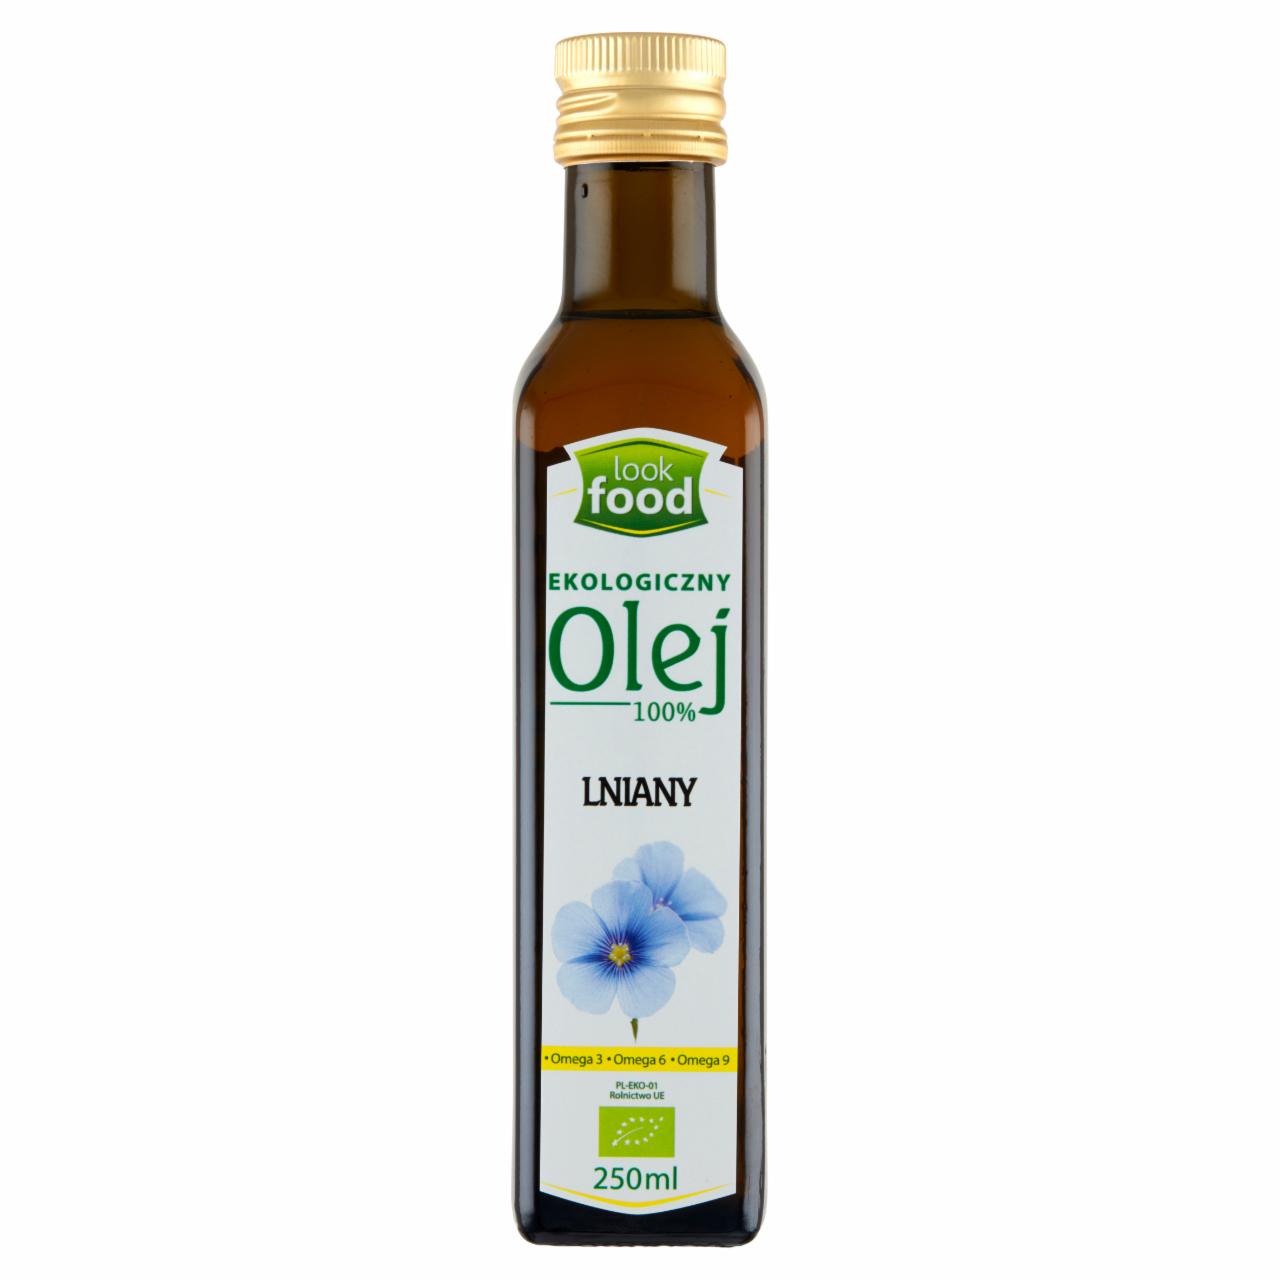 Zdjęcia - Look Food Ekologiczny olej 100% lniany 250 ml